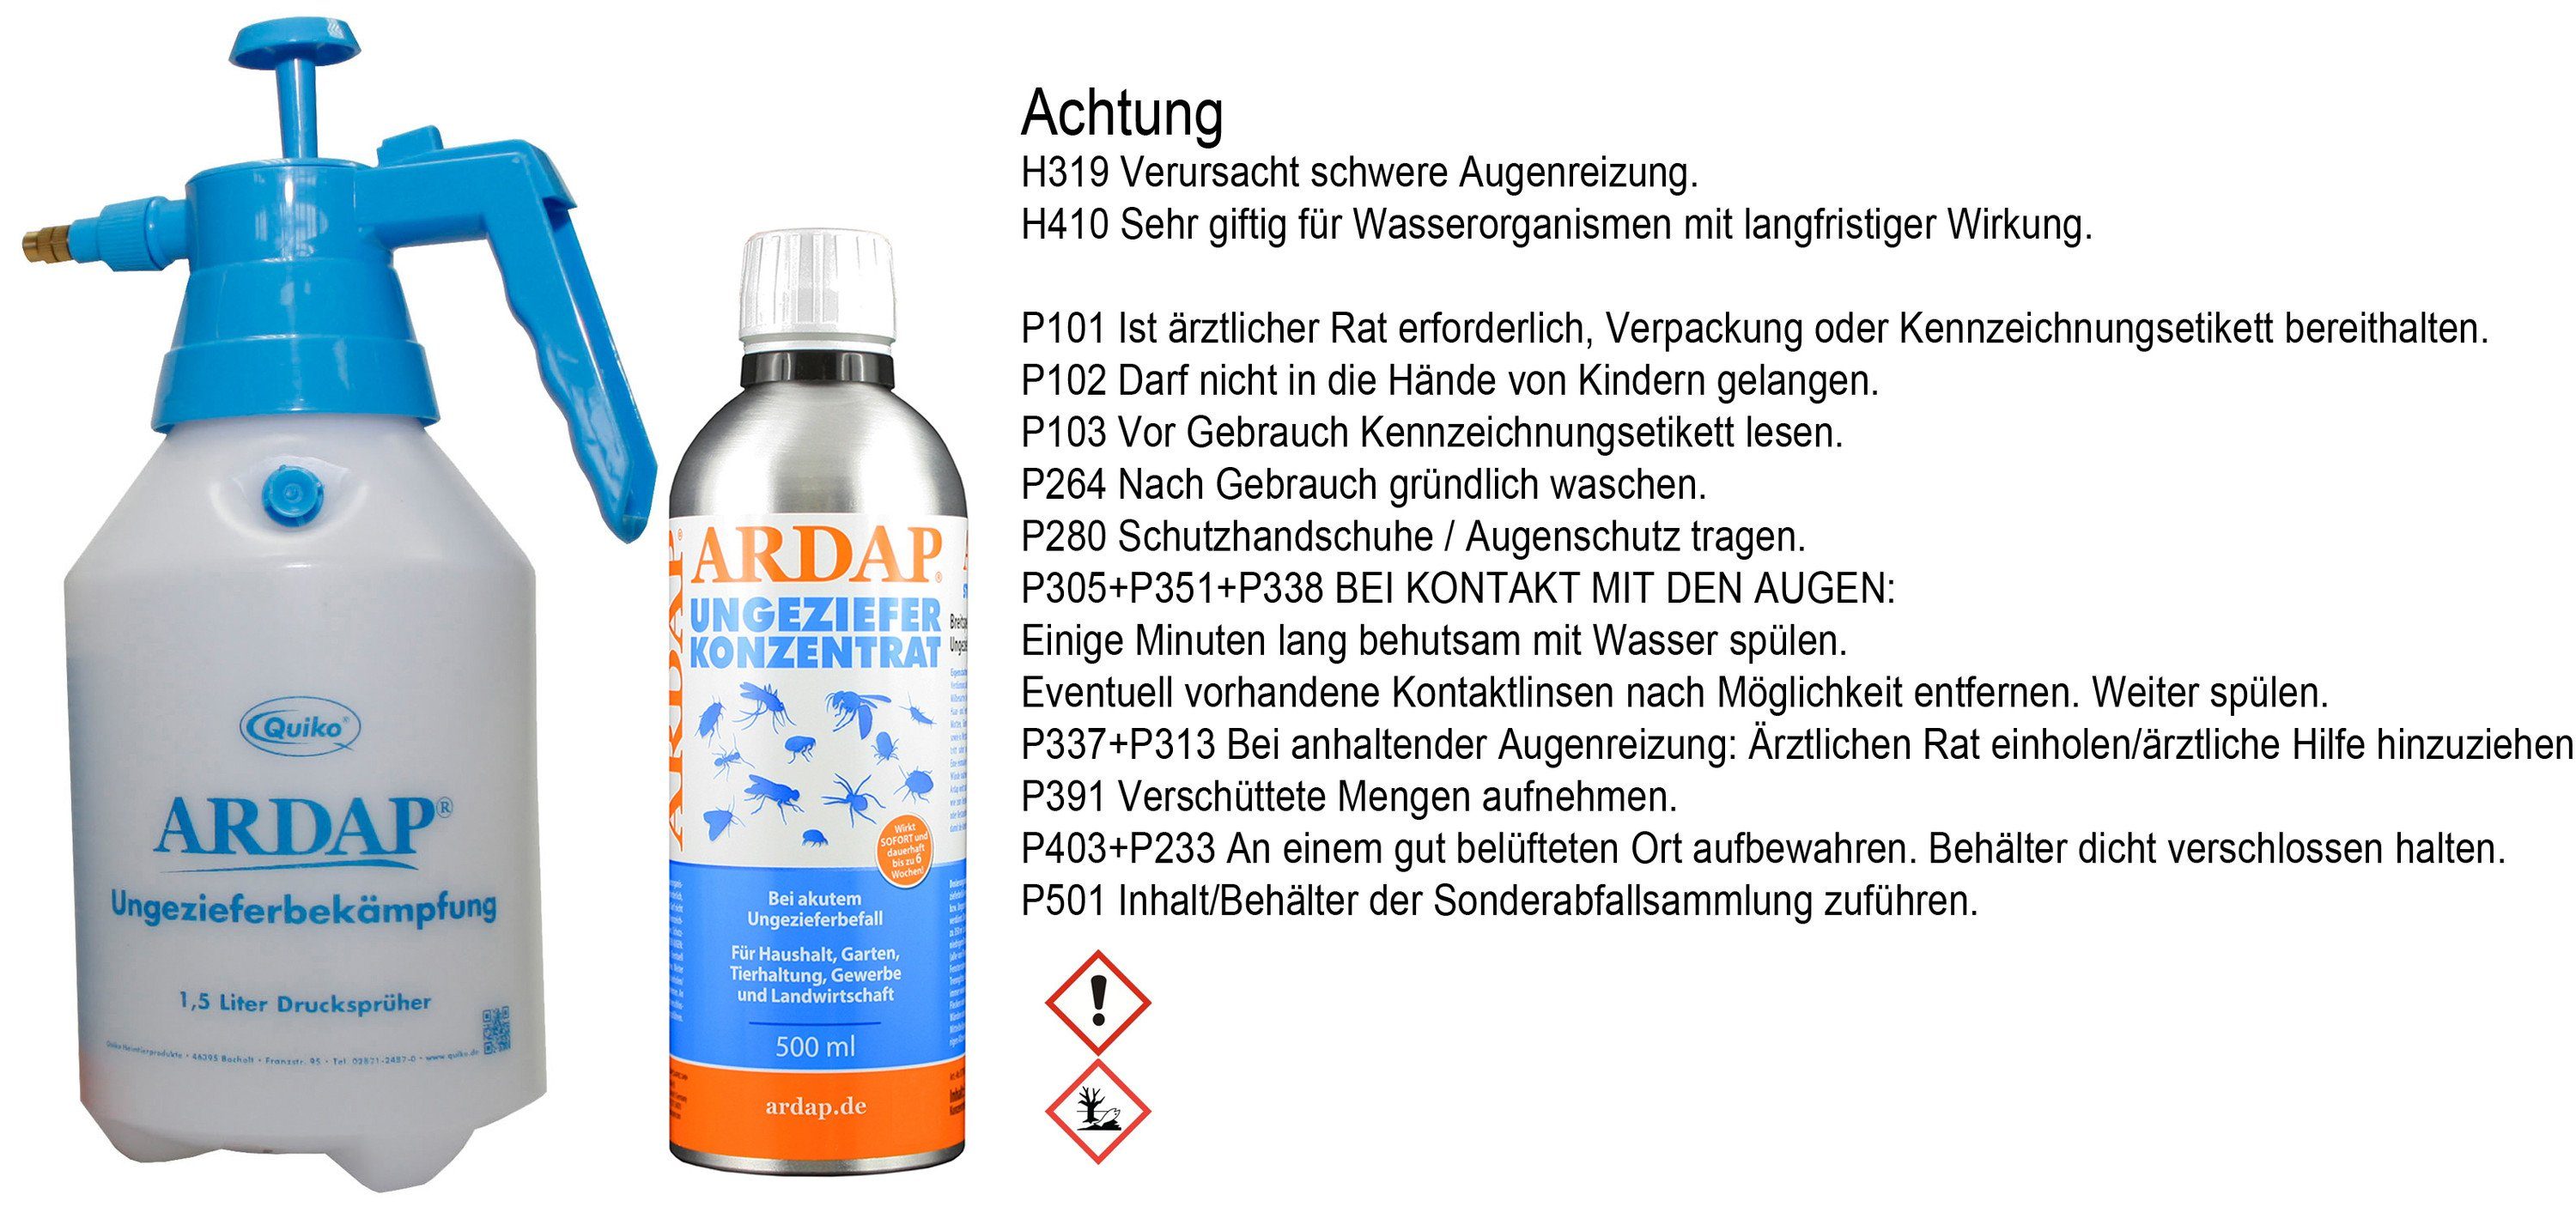 Ardap Insektenspray Ardap Konzentrat 500ml incl. Ardap 1,5L Drucksprüher  für das Konzentrat